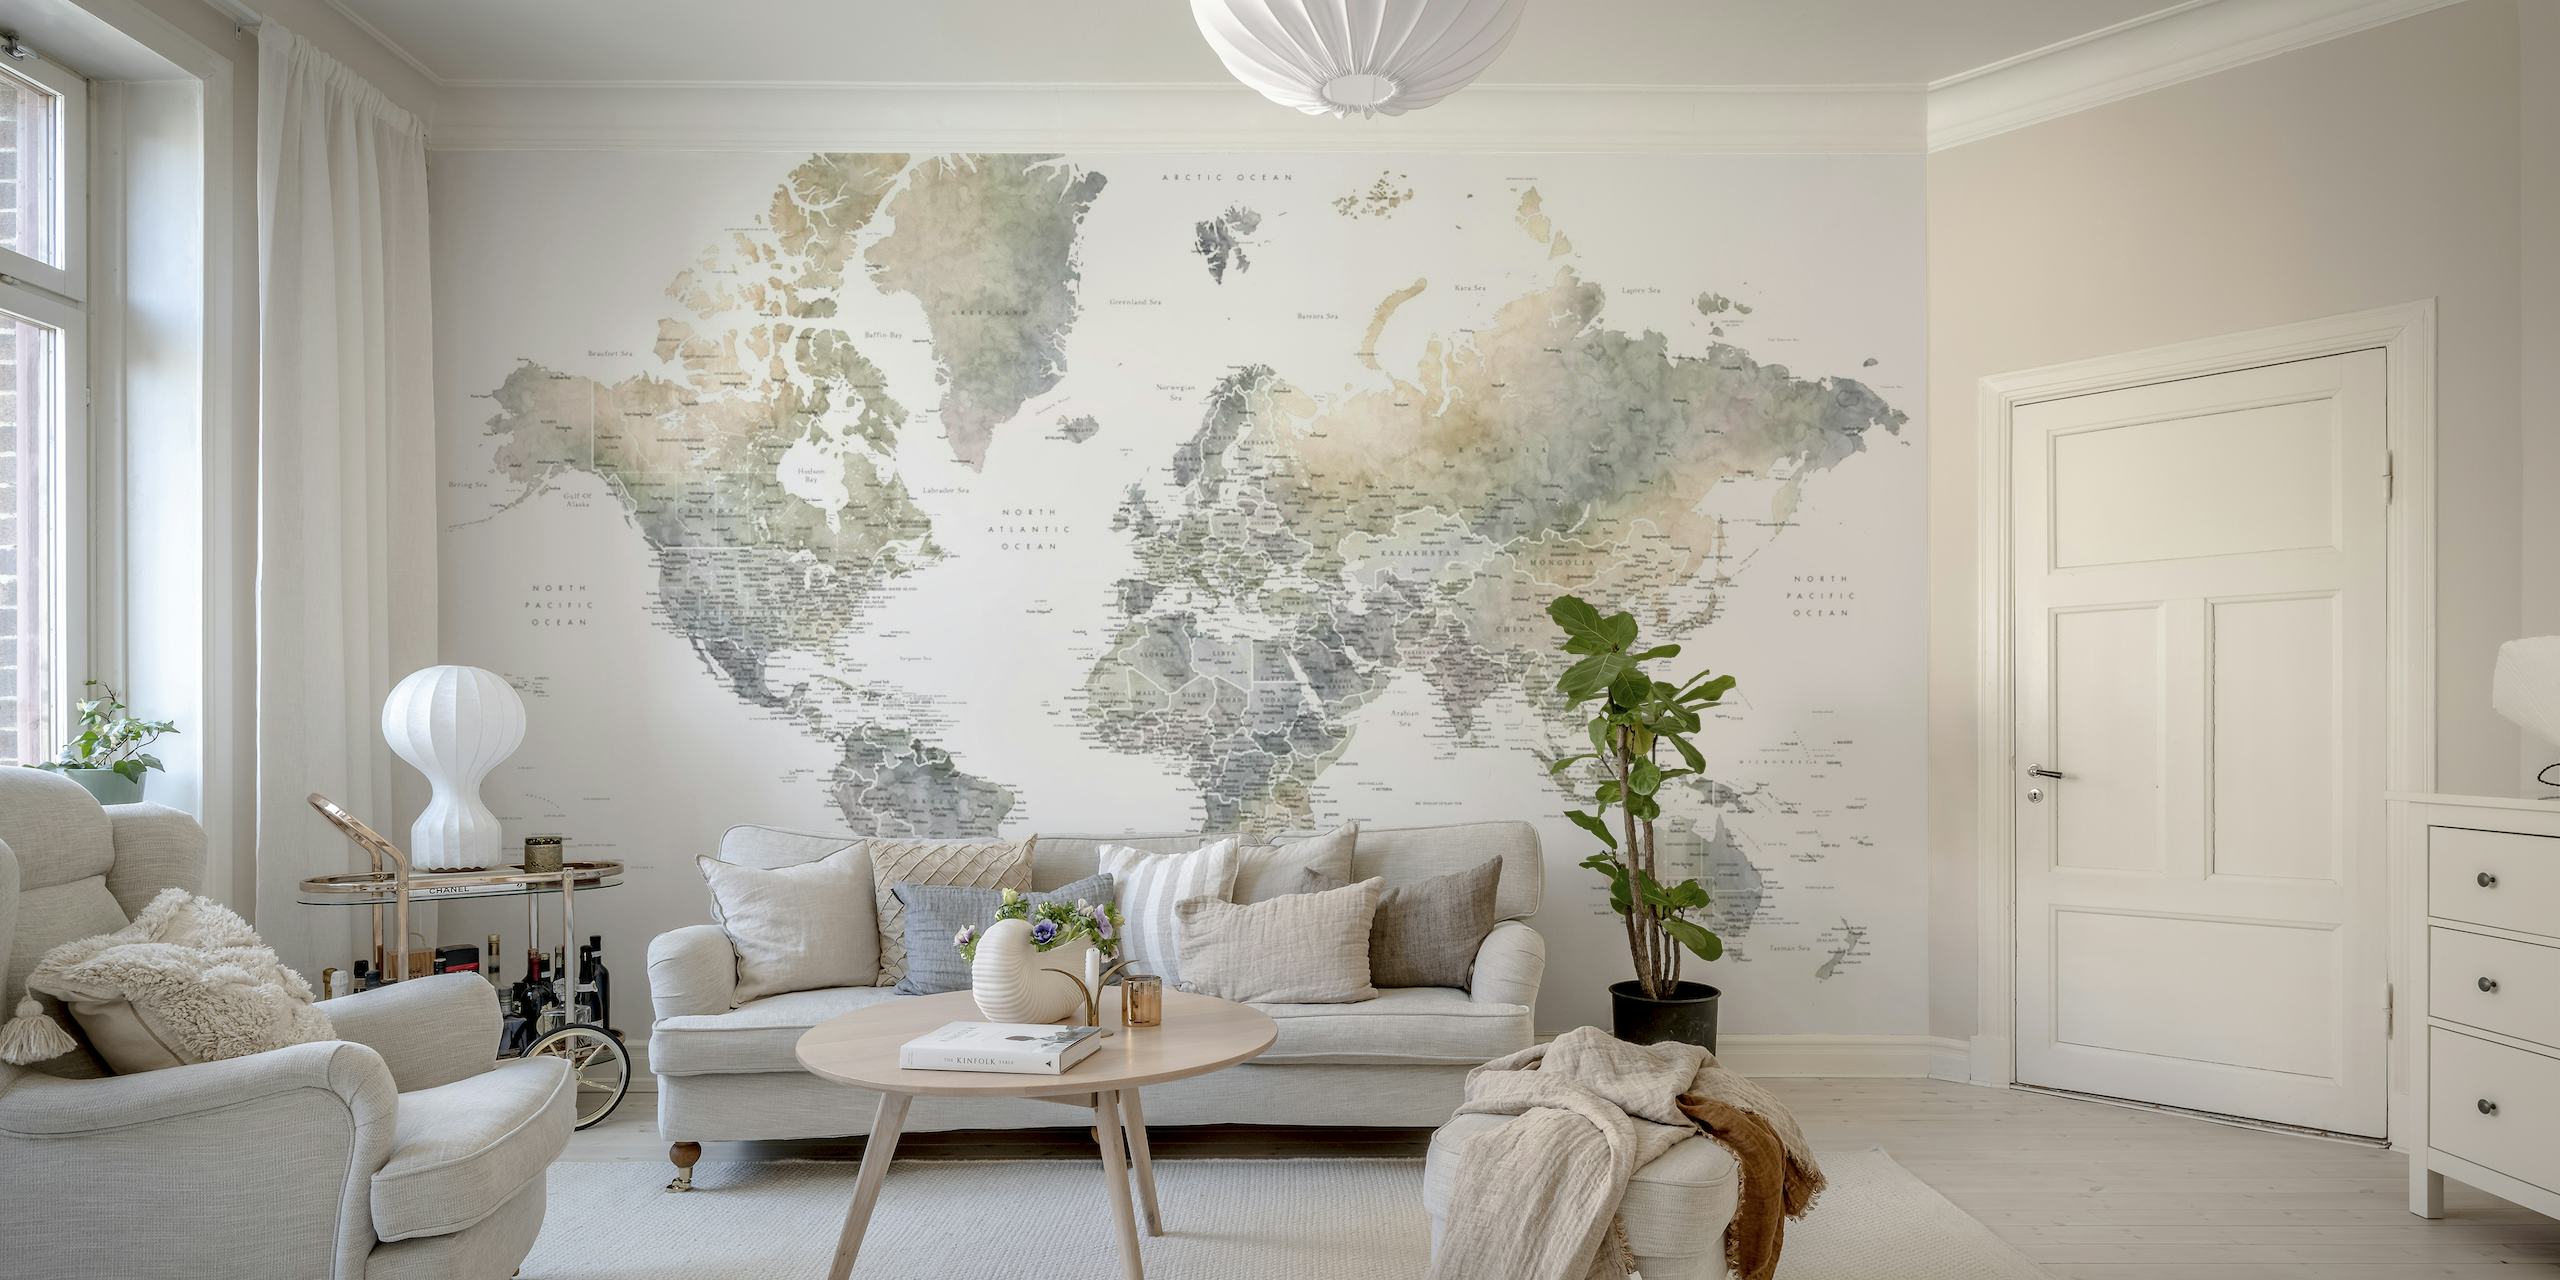 Detailed world map Habiki papel pintado